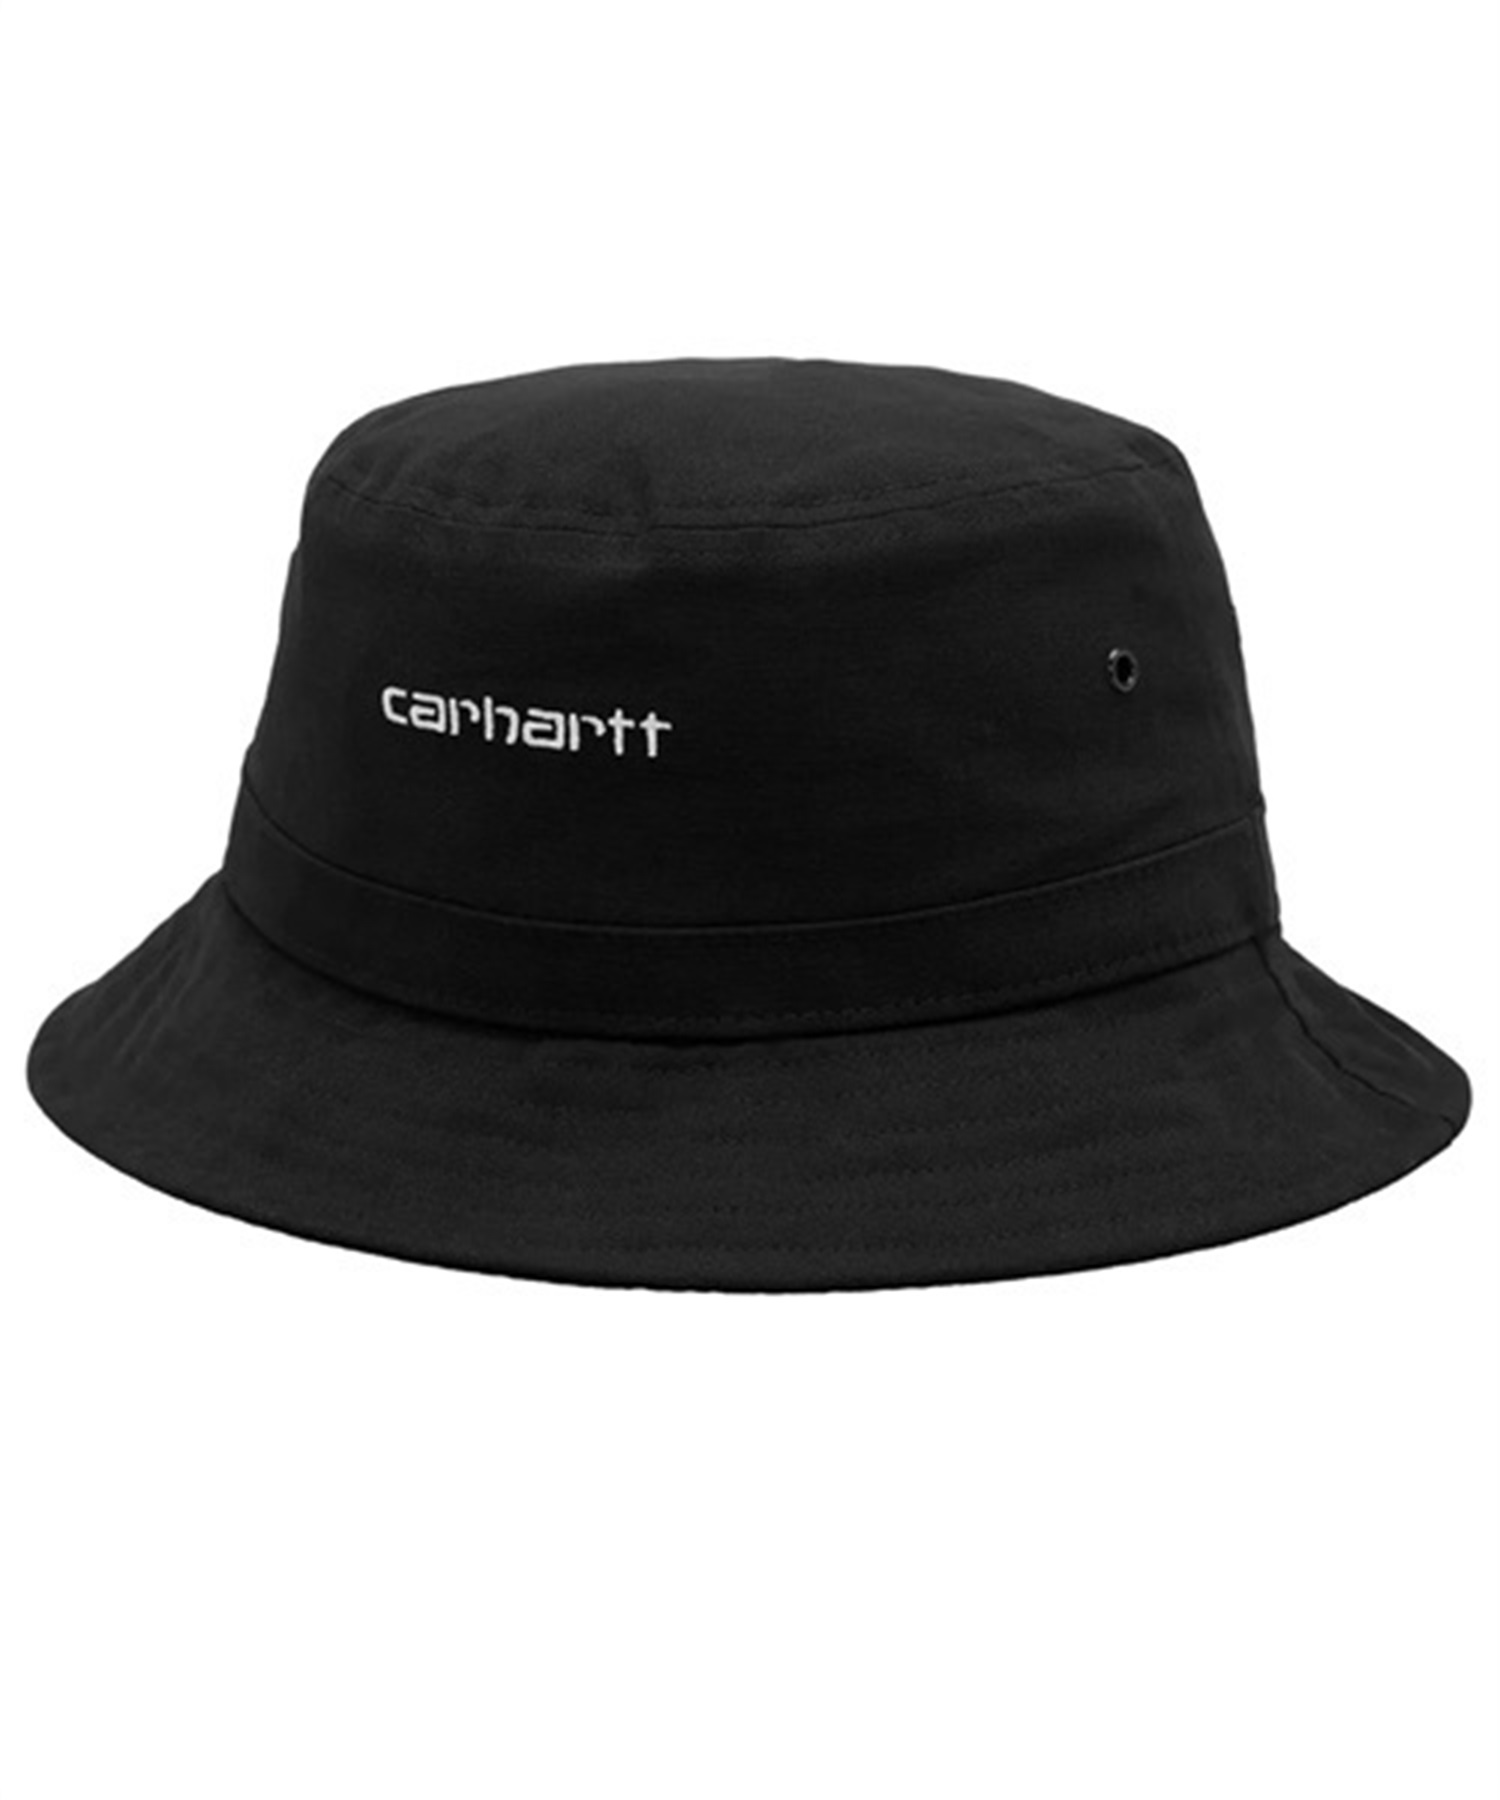 CARHARTT カーハート I029937 メンズ 帽子 ハット サファリ バケット 